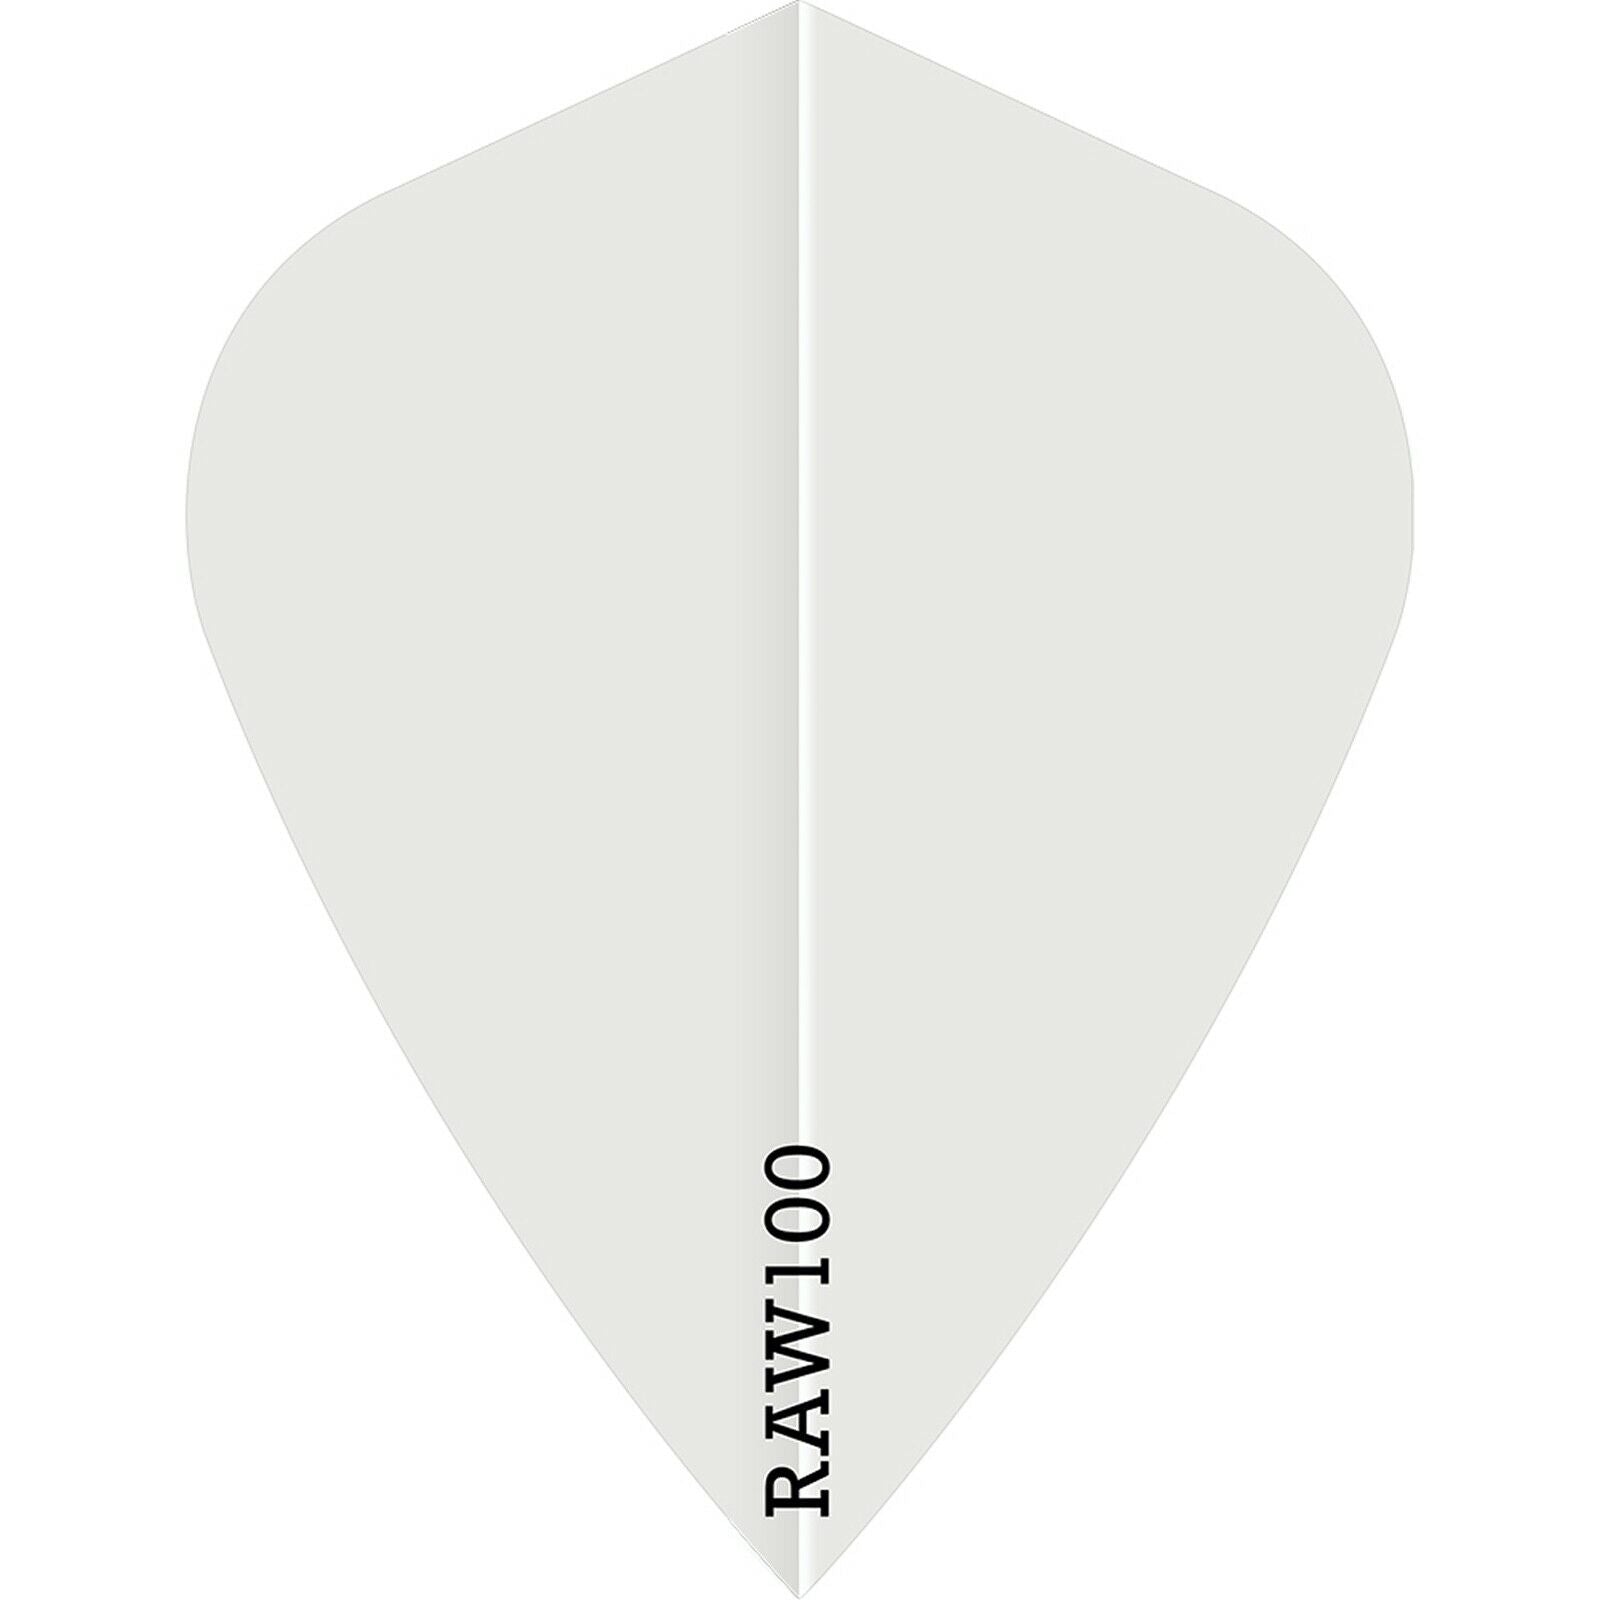 Raw 100 Plain Flights - Kite - 100 micron -White